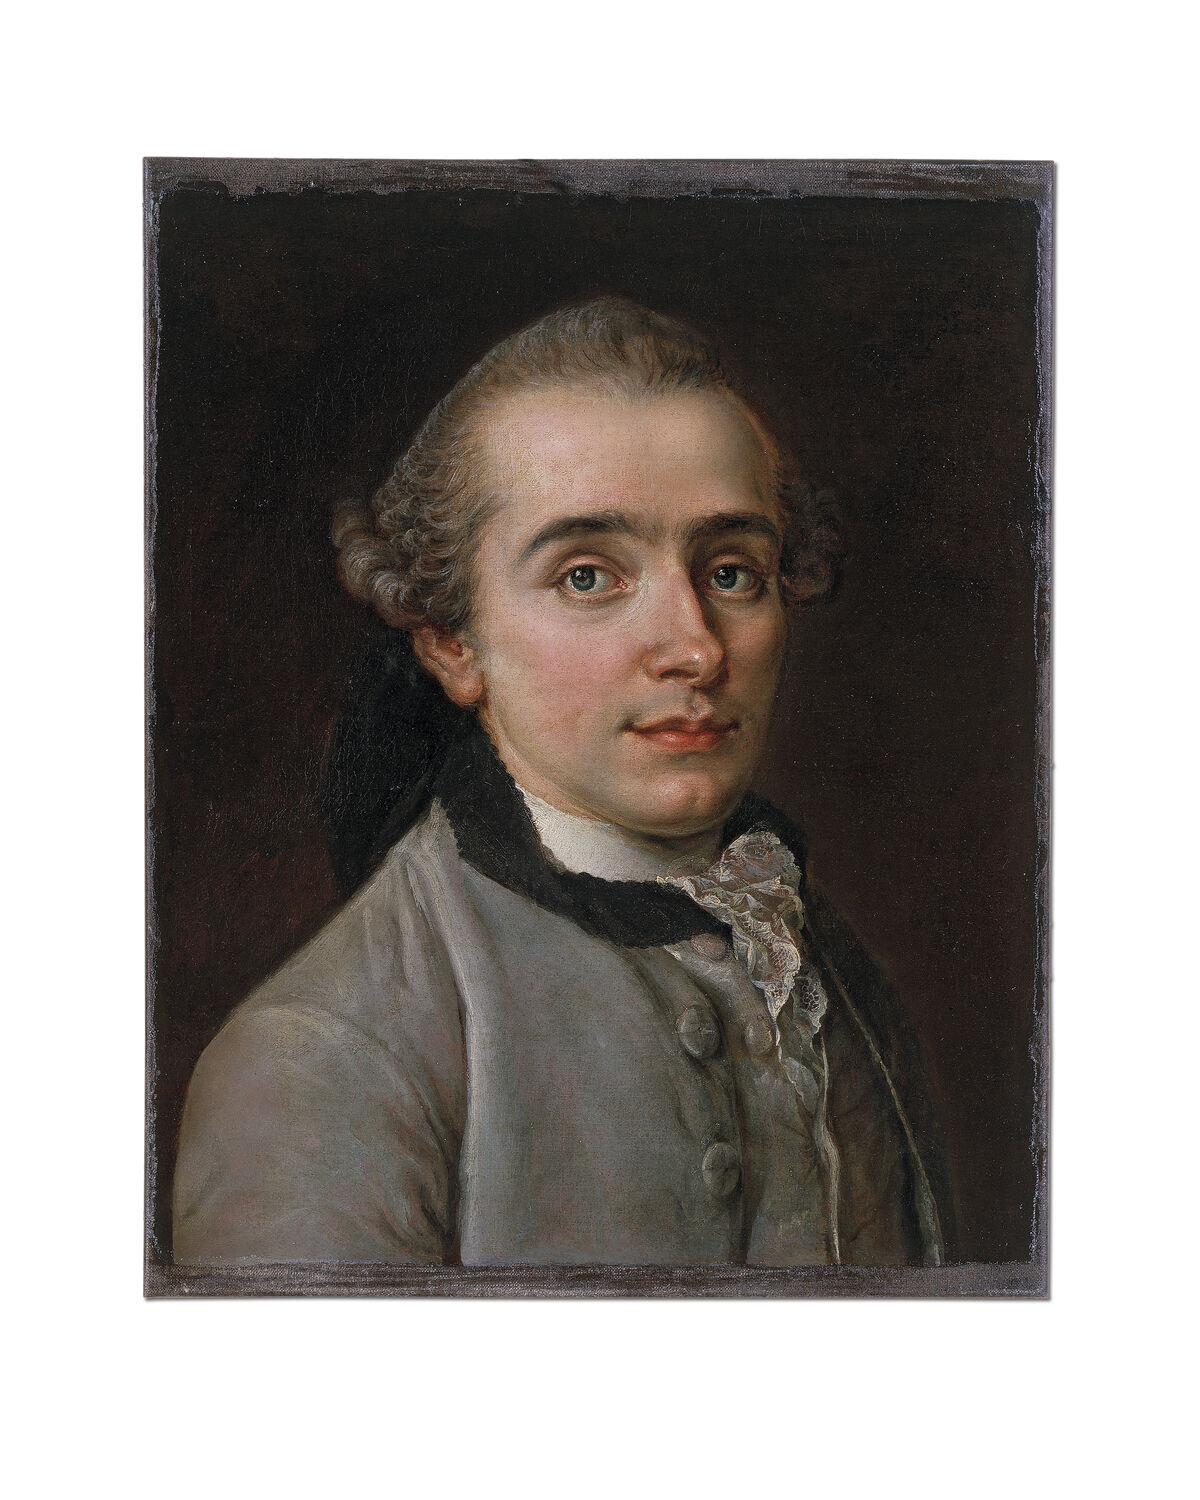 GFD 1/102: Christian von Mechel (Gemälde von Johann Nikolaus Grooth, um 1765)